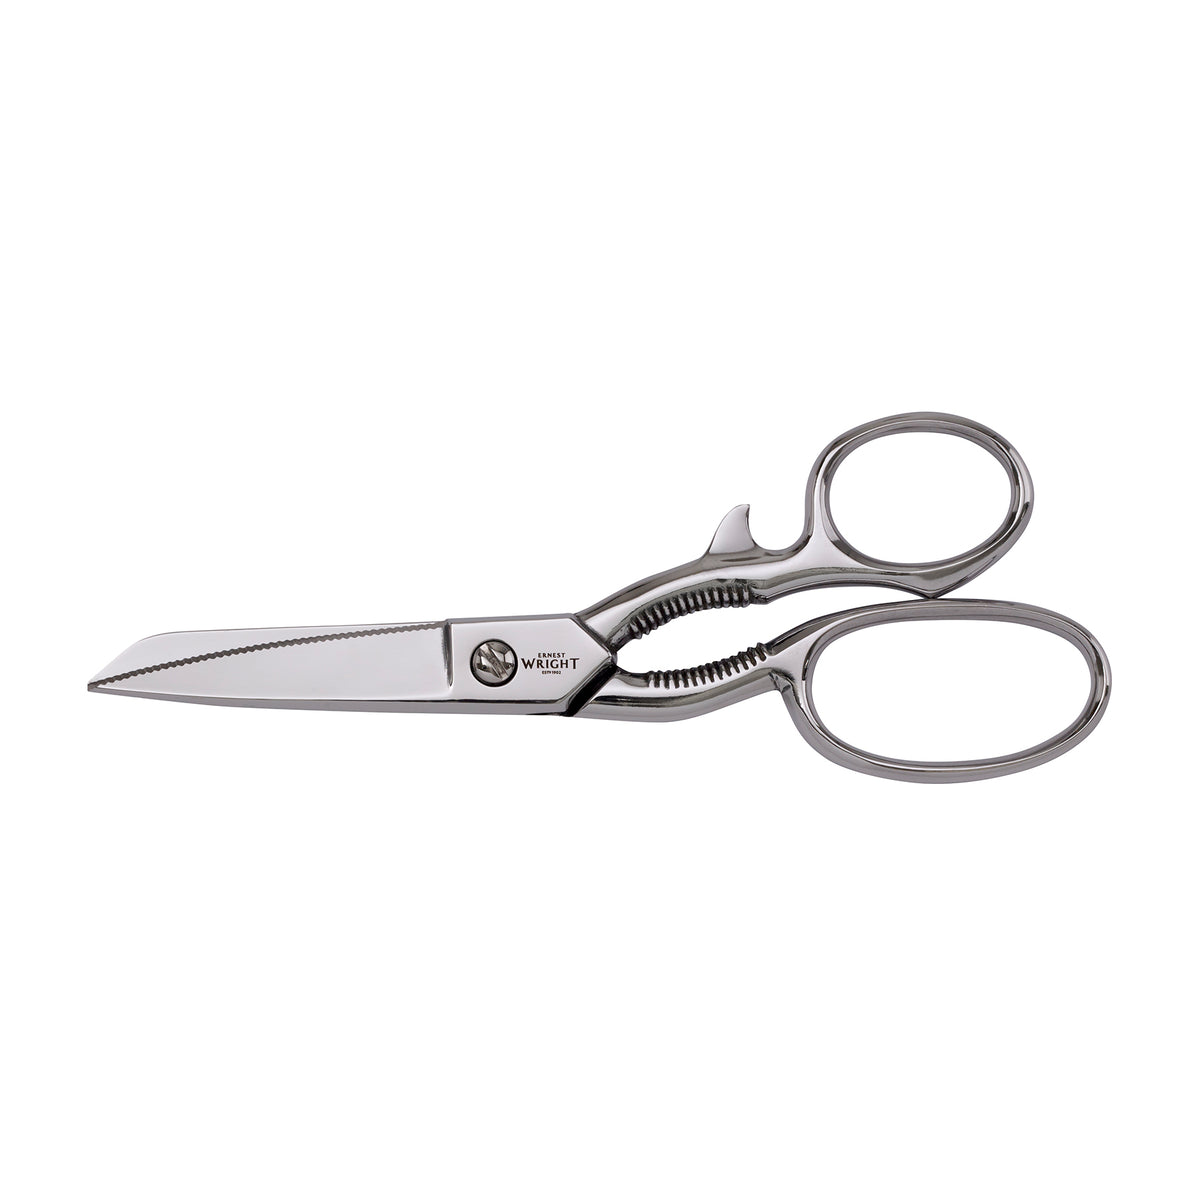 ernest wright Turton kitchen scissors